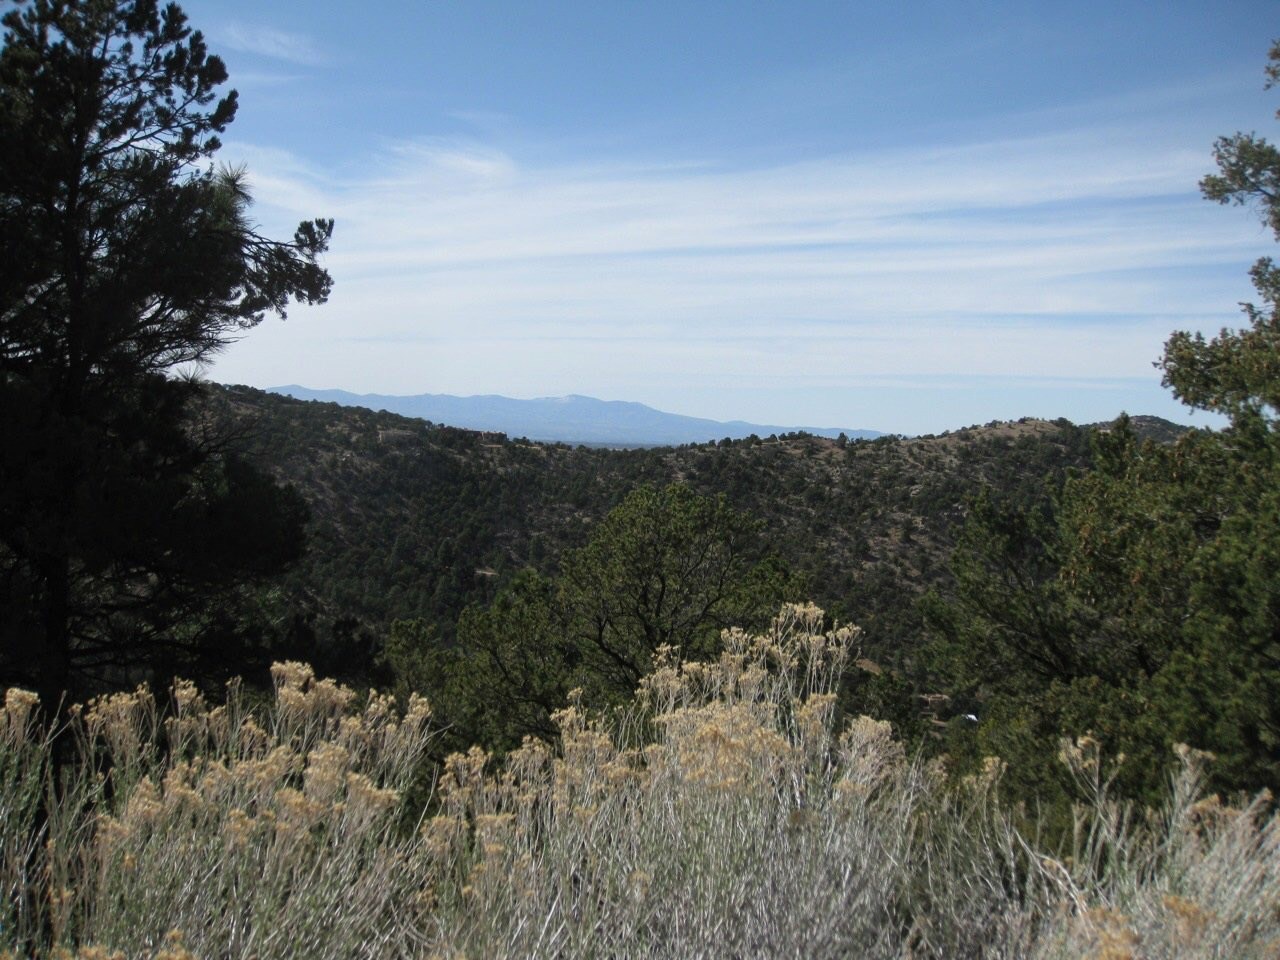 11 Mountain Top, Santa Fe, New Mexico 87505, ,Land,For Sale,11 Mountain Top,202002344